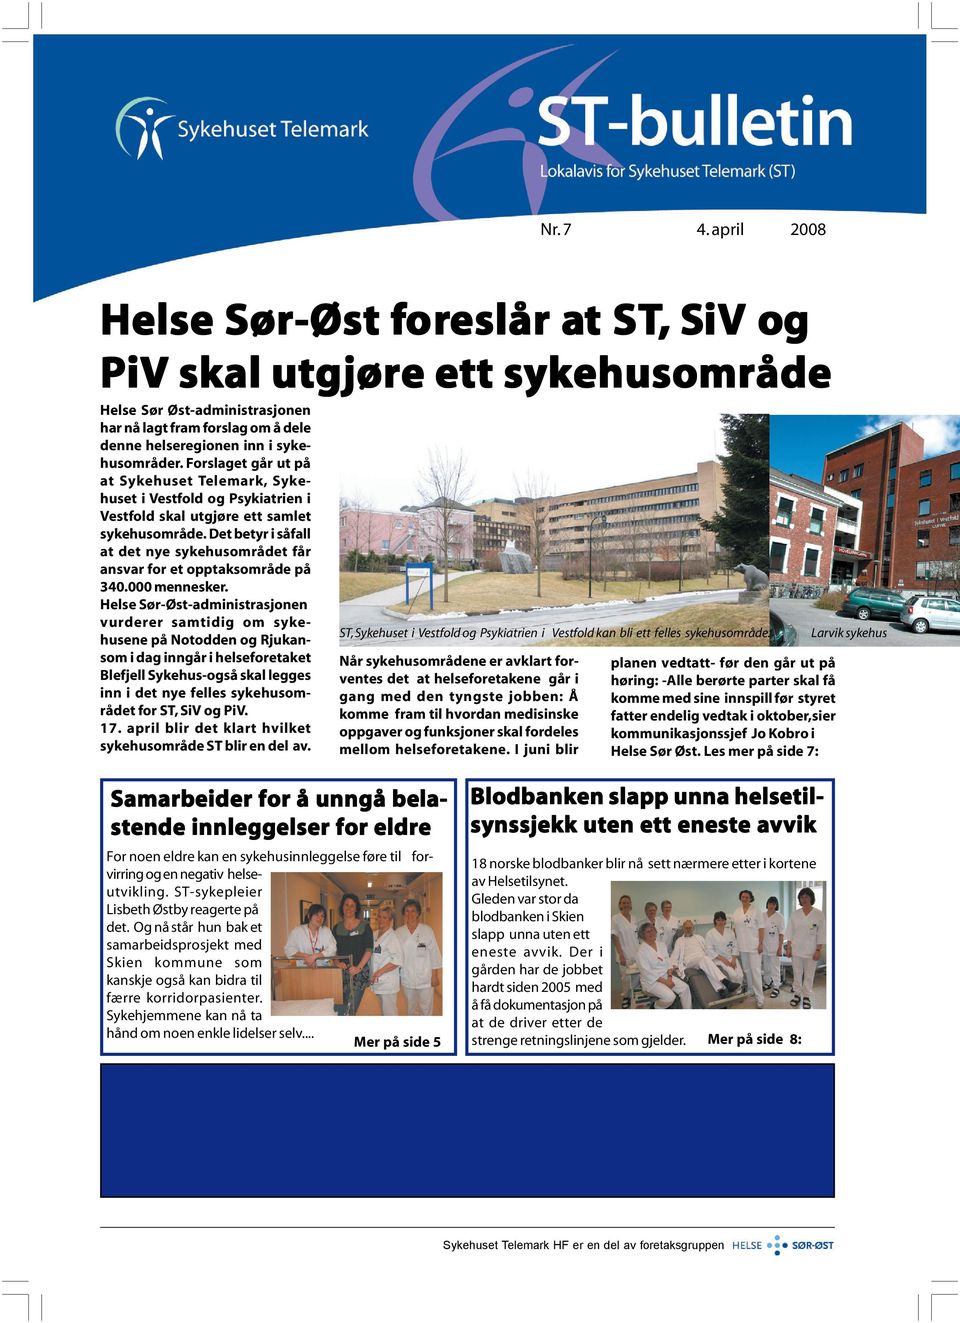 Forslaget går ut på at Sykehuset Telemark, Sykehuset i Vestfold og Psykiatrien i Vestfold skal utgjøre ett samlet sykehusområde.